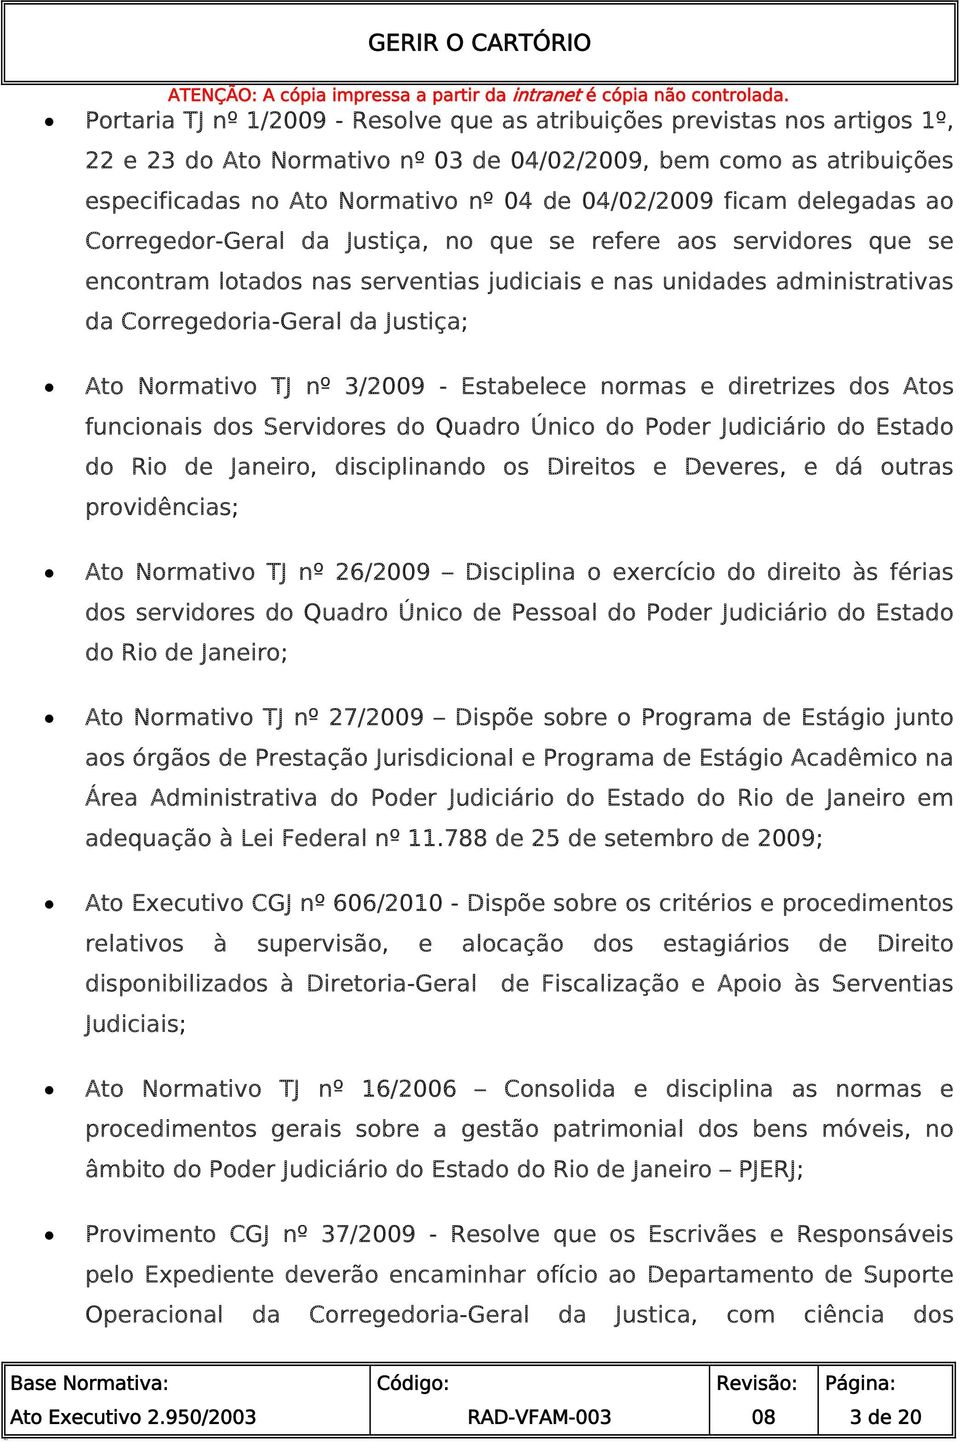 Normativo TJ nº 3/2009 - Estabelece normas e diretrizes dos Atos funcionais dos Servidores do Quadro Único do Poder Judiciário do Estado do Rio de Janeiro, disciplinando os Direitos e Deveres, e dá